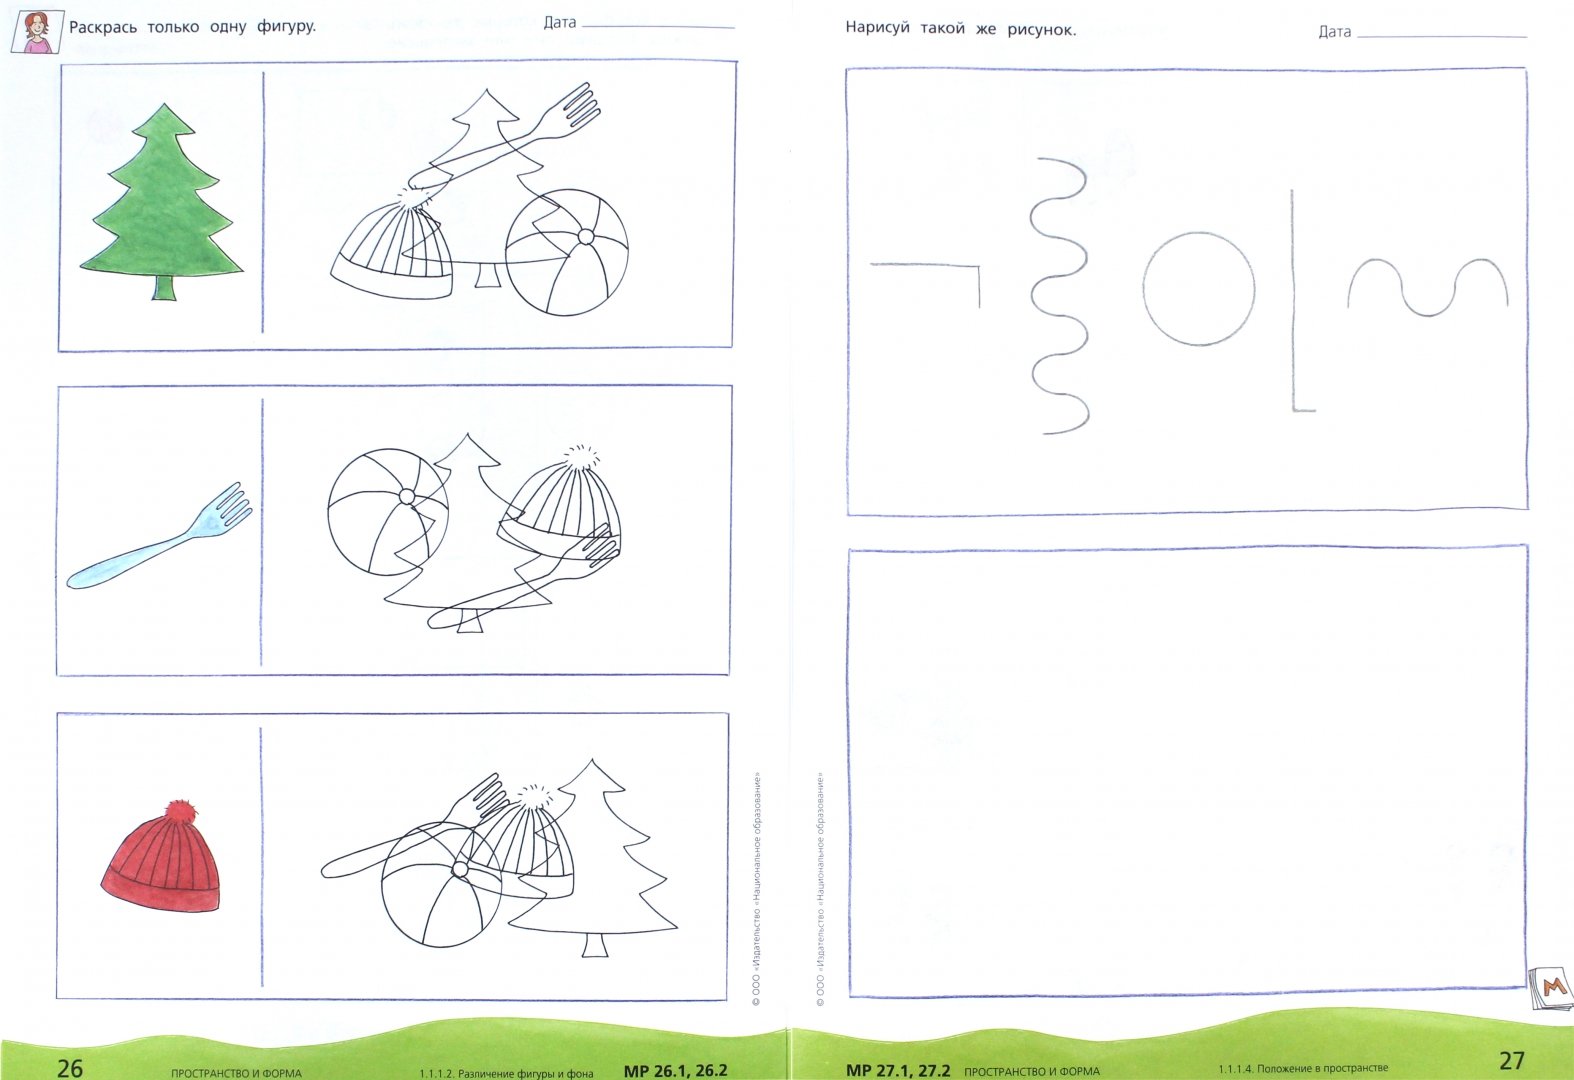 Иллюстрация 1 из 15 для Математика в детском саду. Математическая тетрадь для детей 3-4-5 лет. ФГОС ДО - Дженс Лоренц | Лабиринт - книги. Источник: Лабиринт